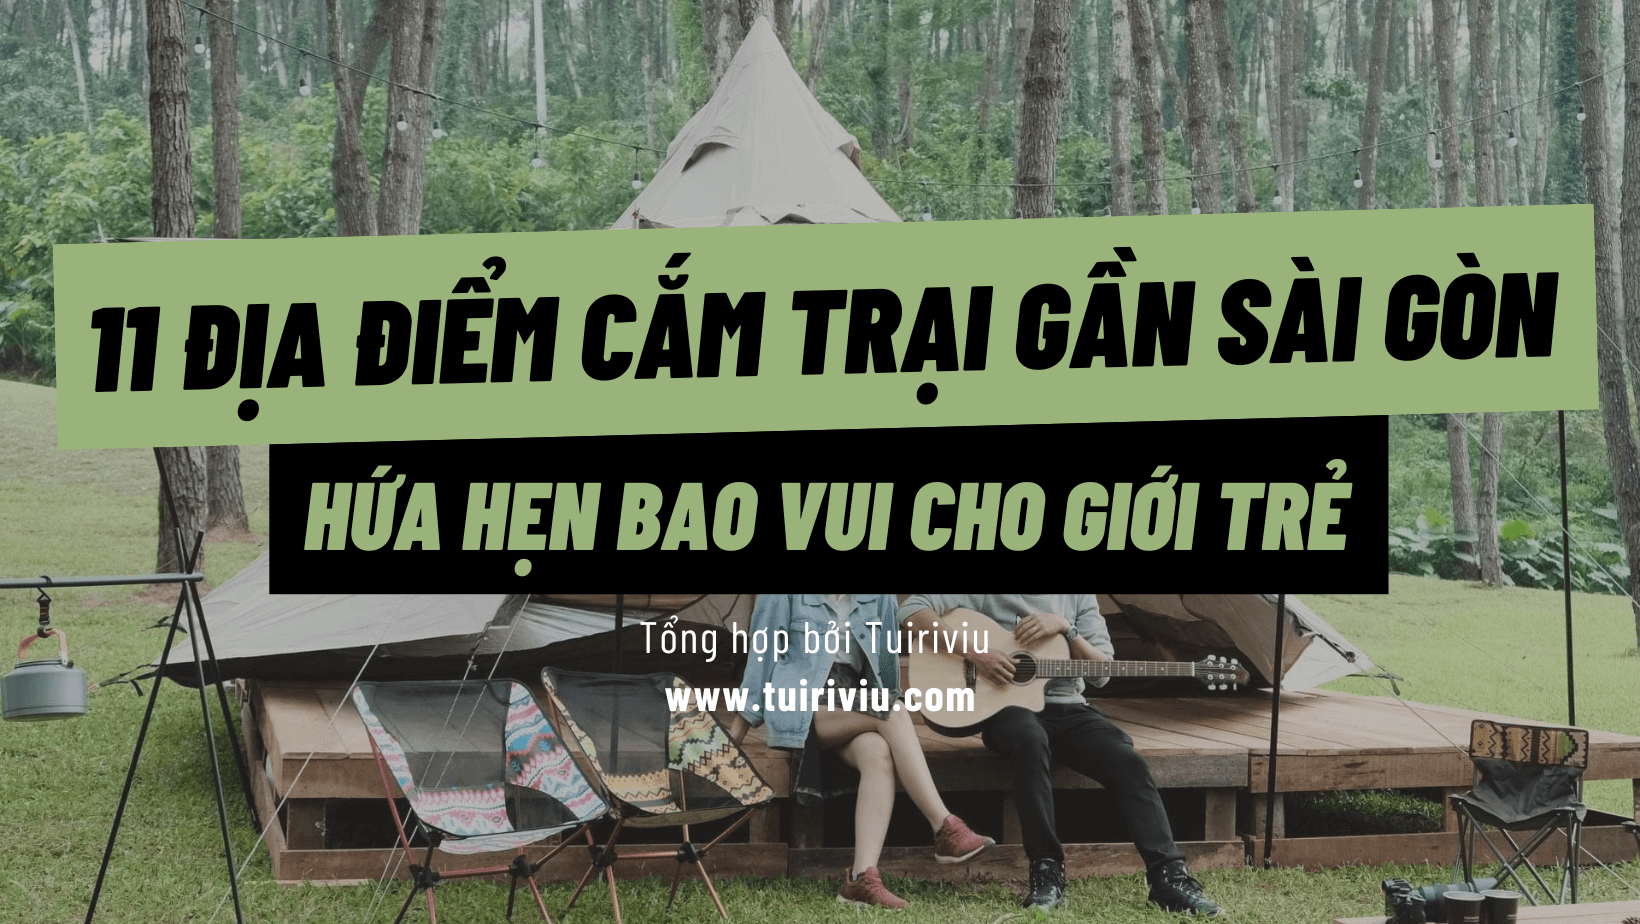 Cắm trại gần Sài Gòn tuiriviu